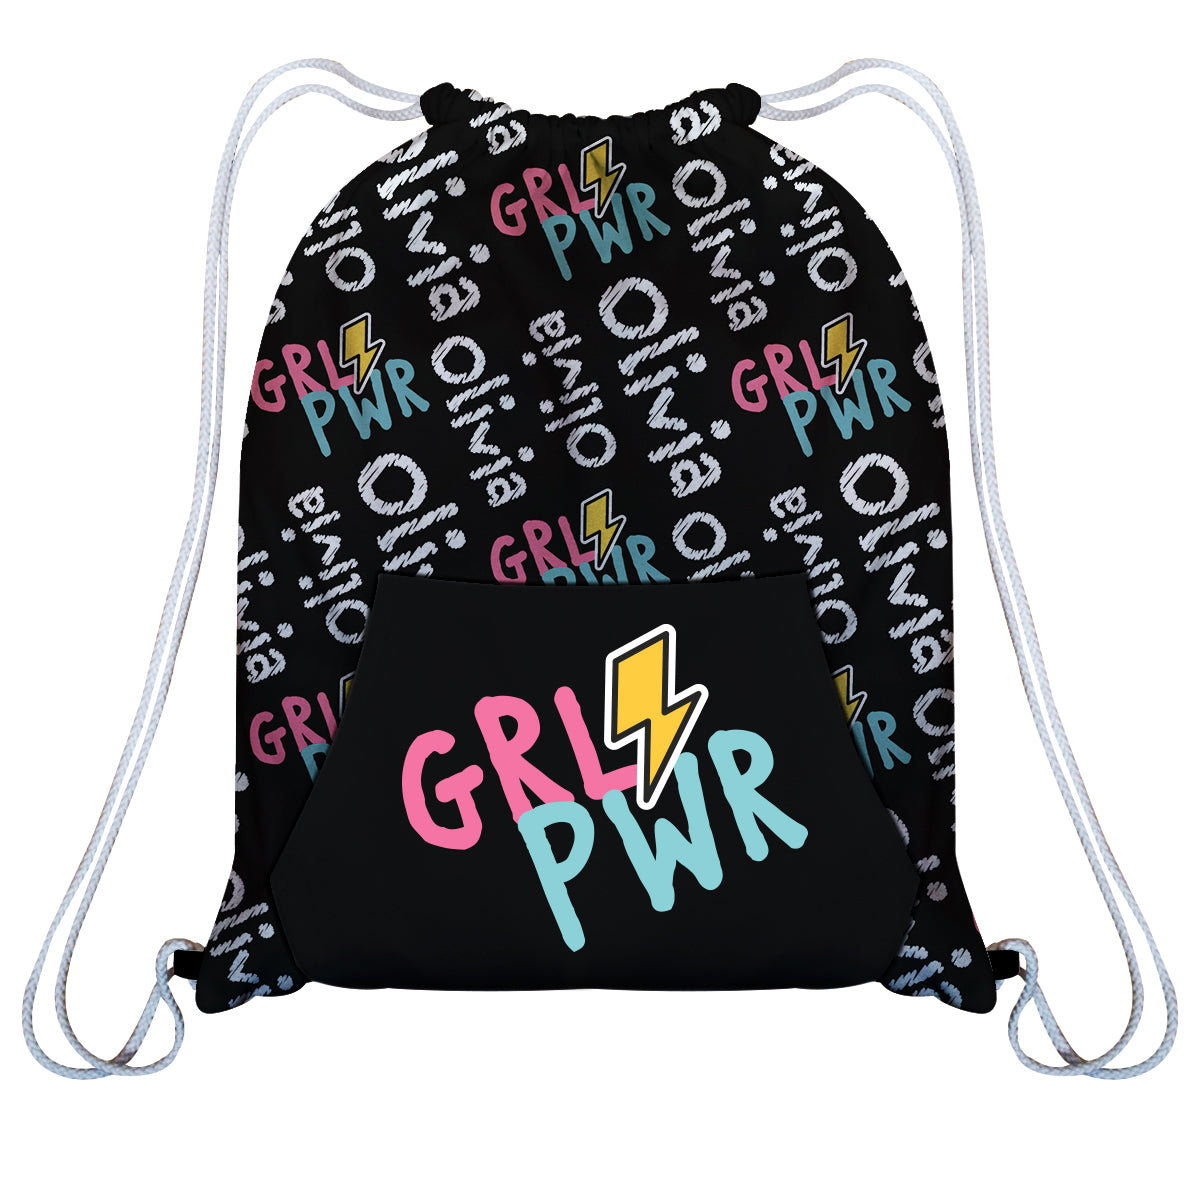 Girl Power and Name Print Black Fleece Gym Bag with Kangaroo Pocket 14 X 19""